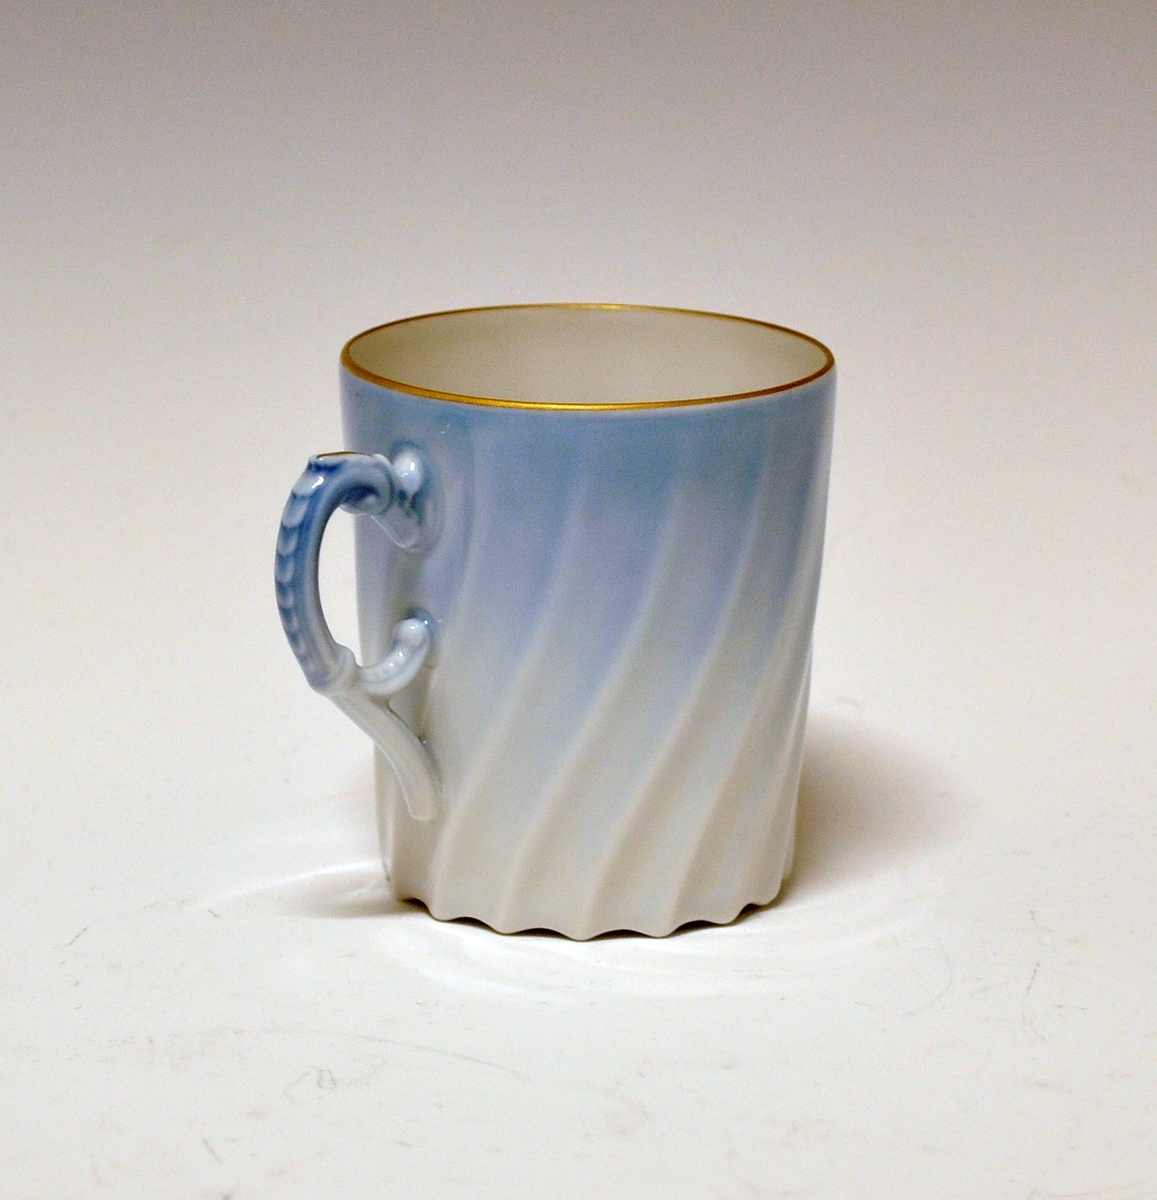 Kaffekopp i porselen. Dekorert i lyseblått og med gullkanter.
Dekor Maud, i produksjon fra 1978-2006.
Modell Bogstad.